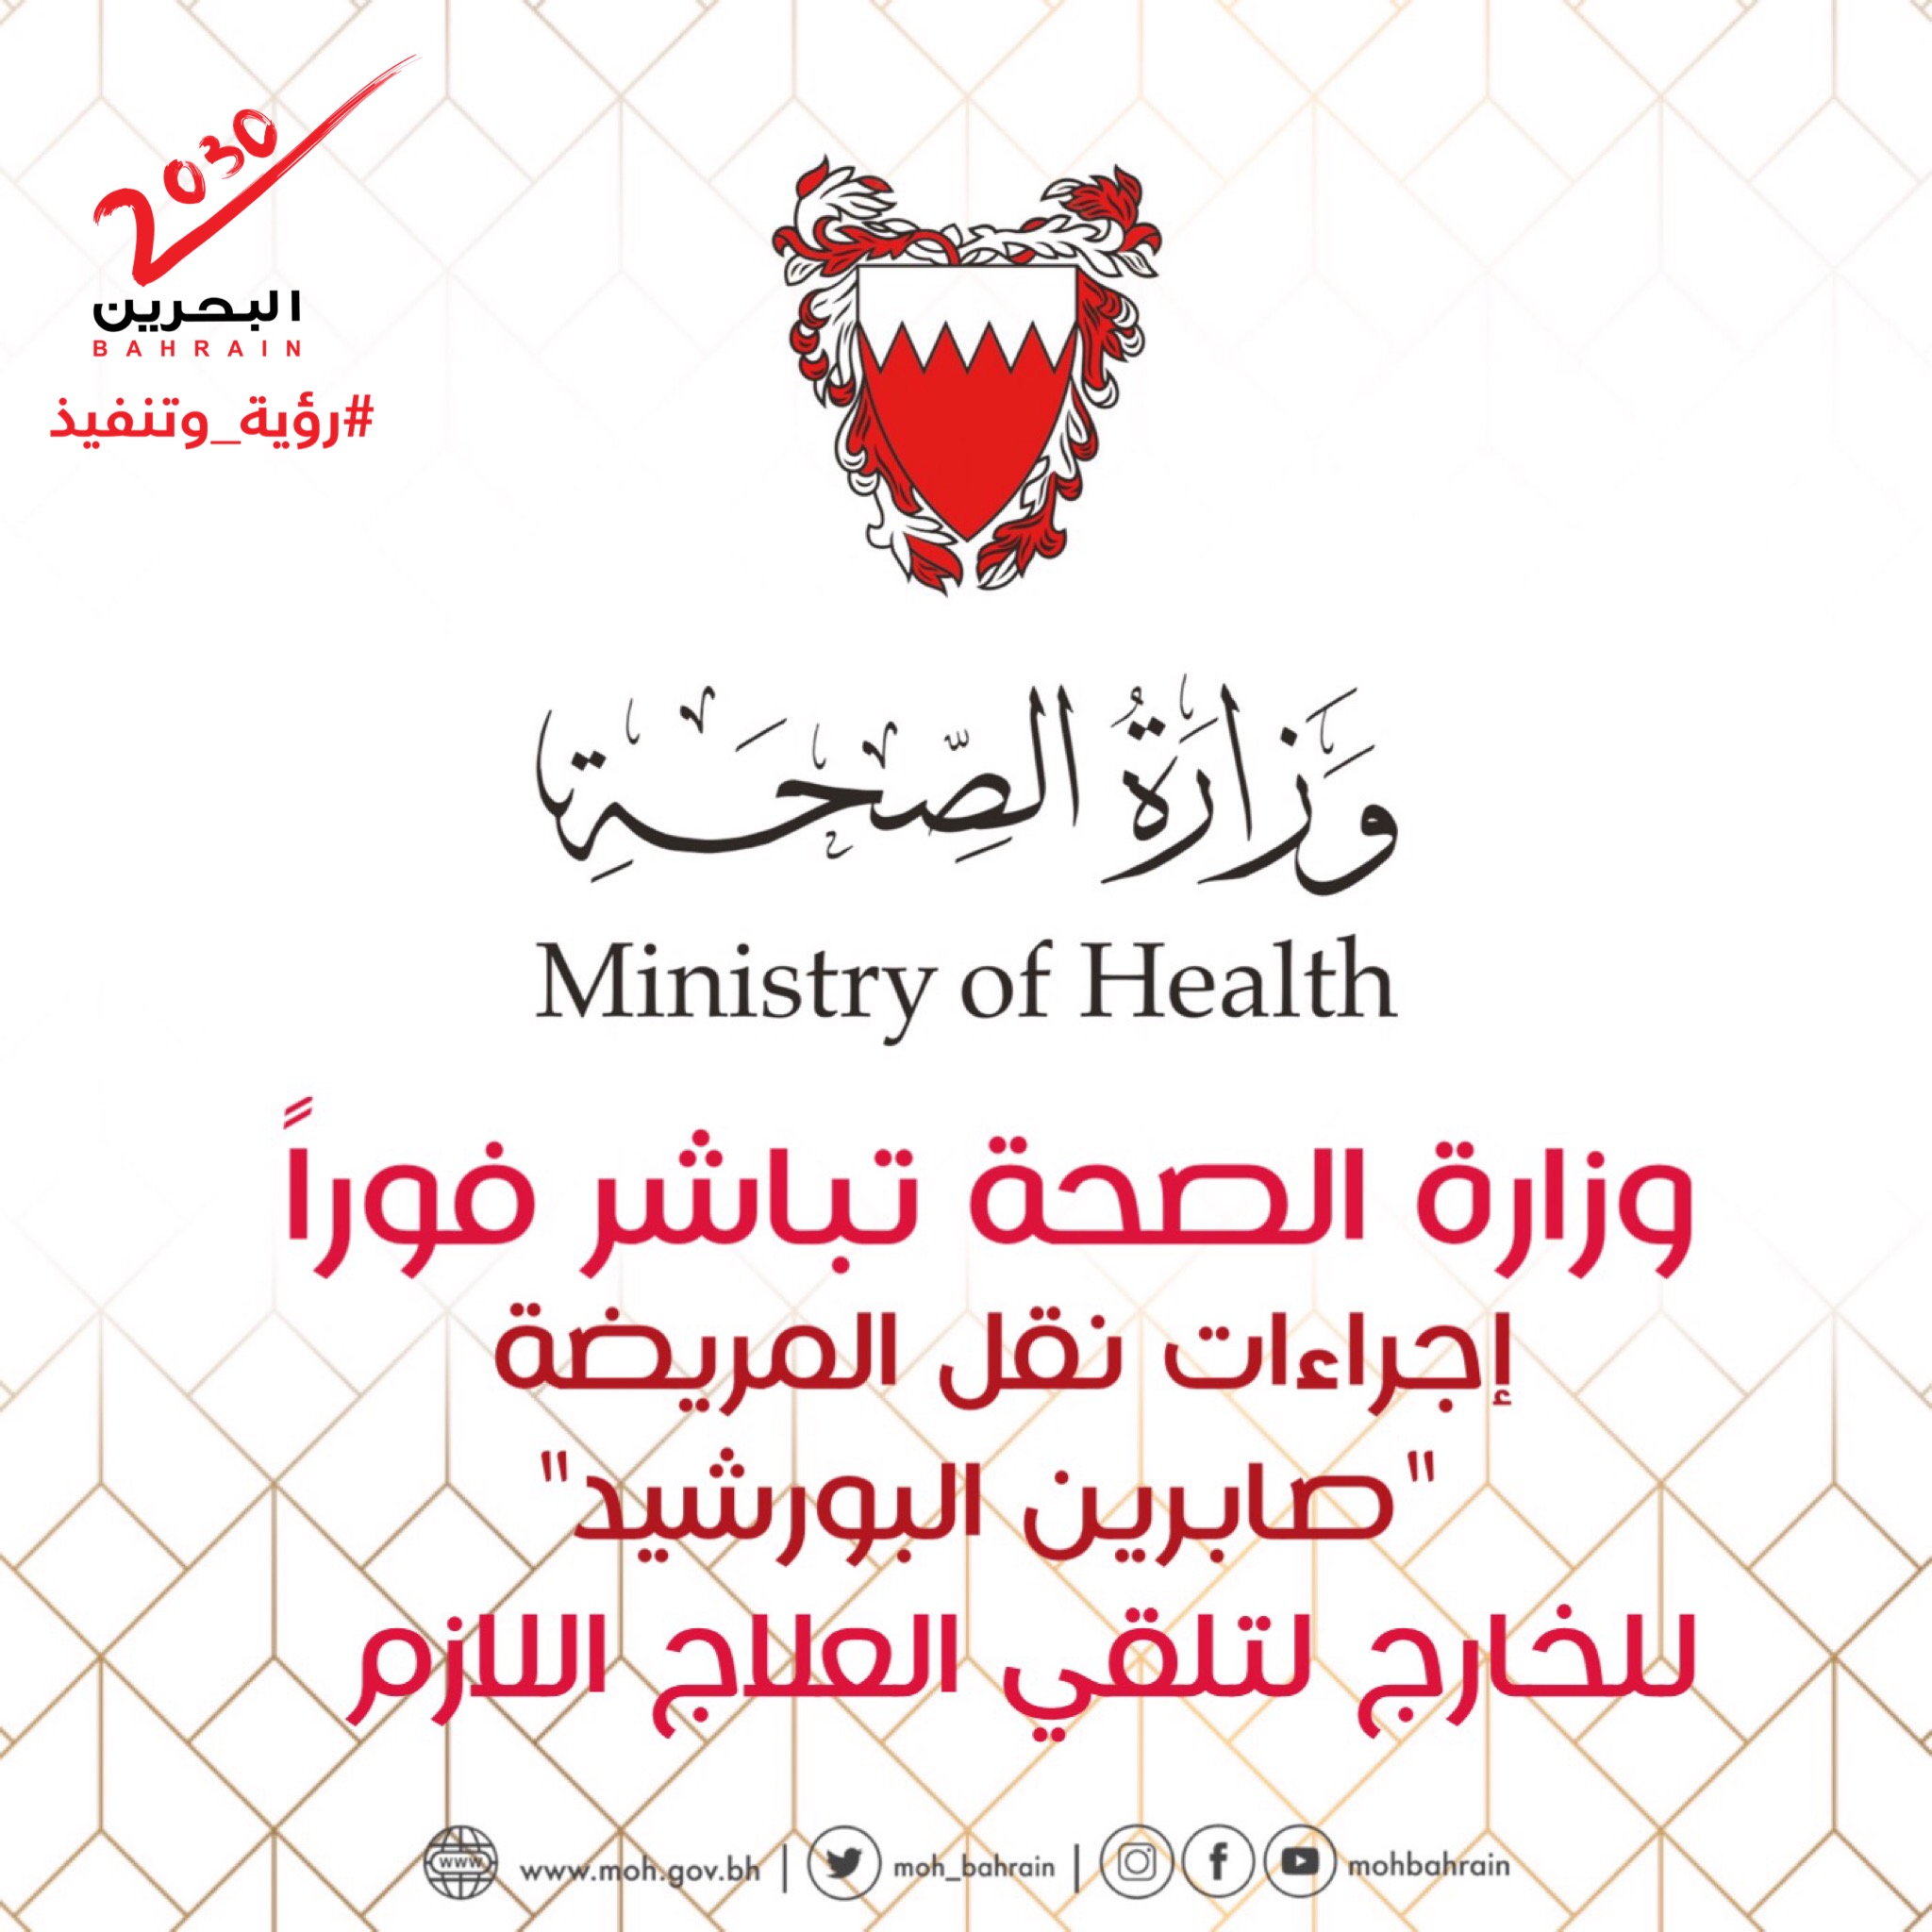 وزارة الصحة تباشر فورا إجراءات نقل المريضة "صابرين البورشيد" للخارج لتلقي العلاج اللازم 